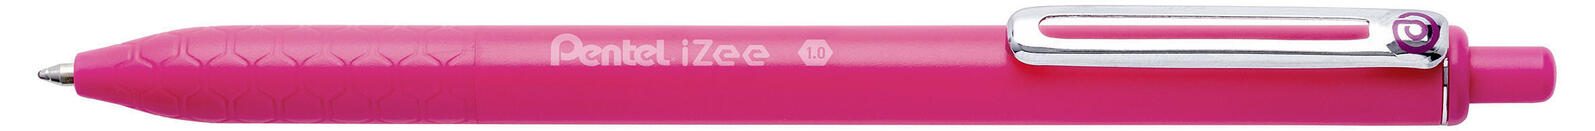 Pentel Kugelschreiber 1 Kugelschr. iZee BX470 pink 0.5 mm Pink